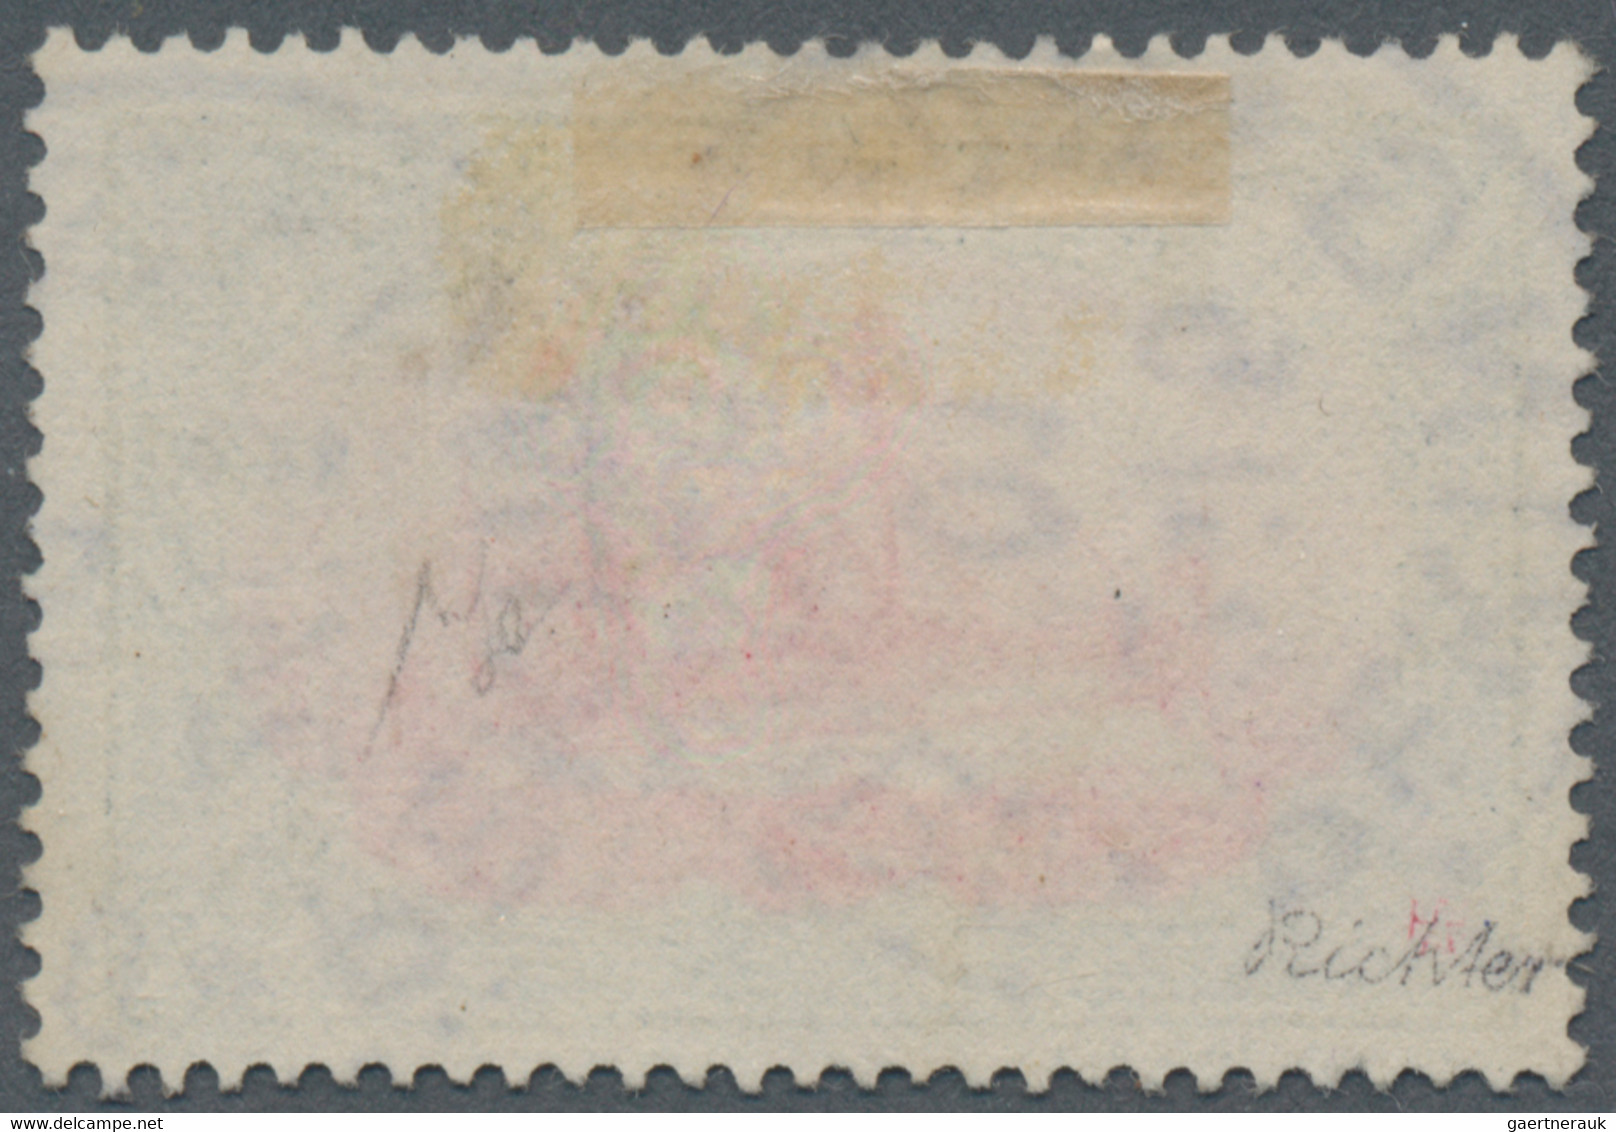 Deutsche Post In China: 1901, Freimarke 5 M, Petschili-Ausgaben, Grünschwarz/bräunlichkarmin, Gebrau - China (offices)